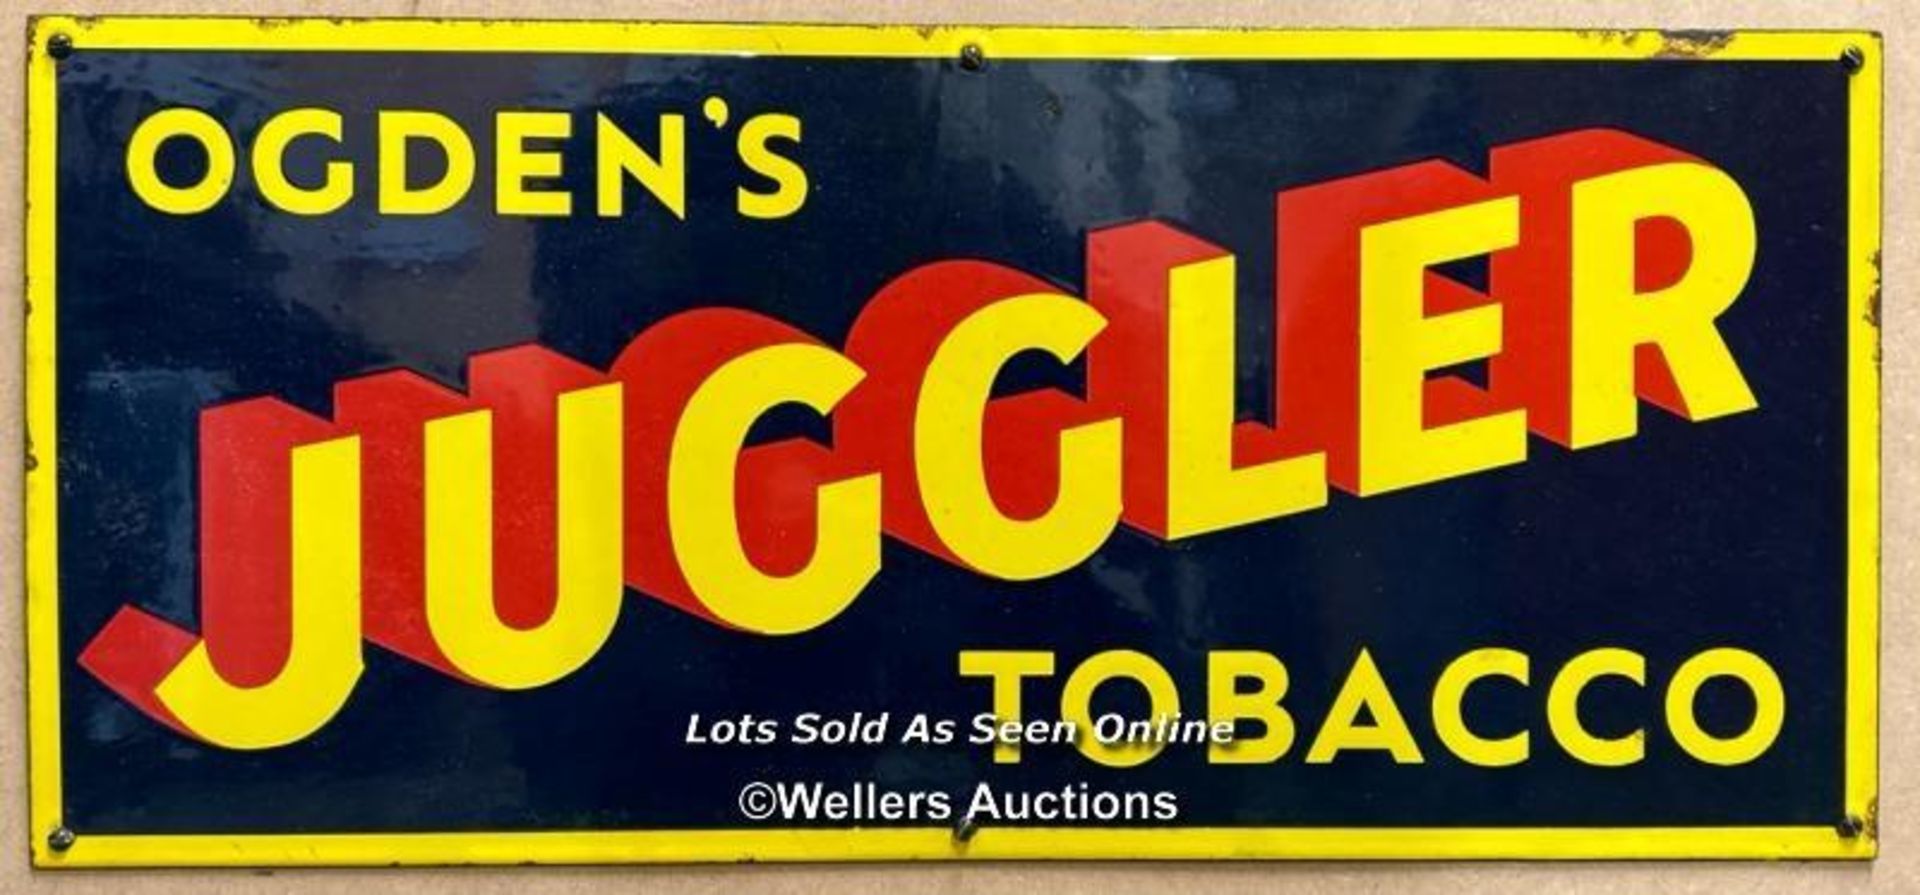 Vintage enamel tobacco sign "OGDEN'S JUGGLER TOBACCO", 56x26cm